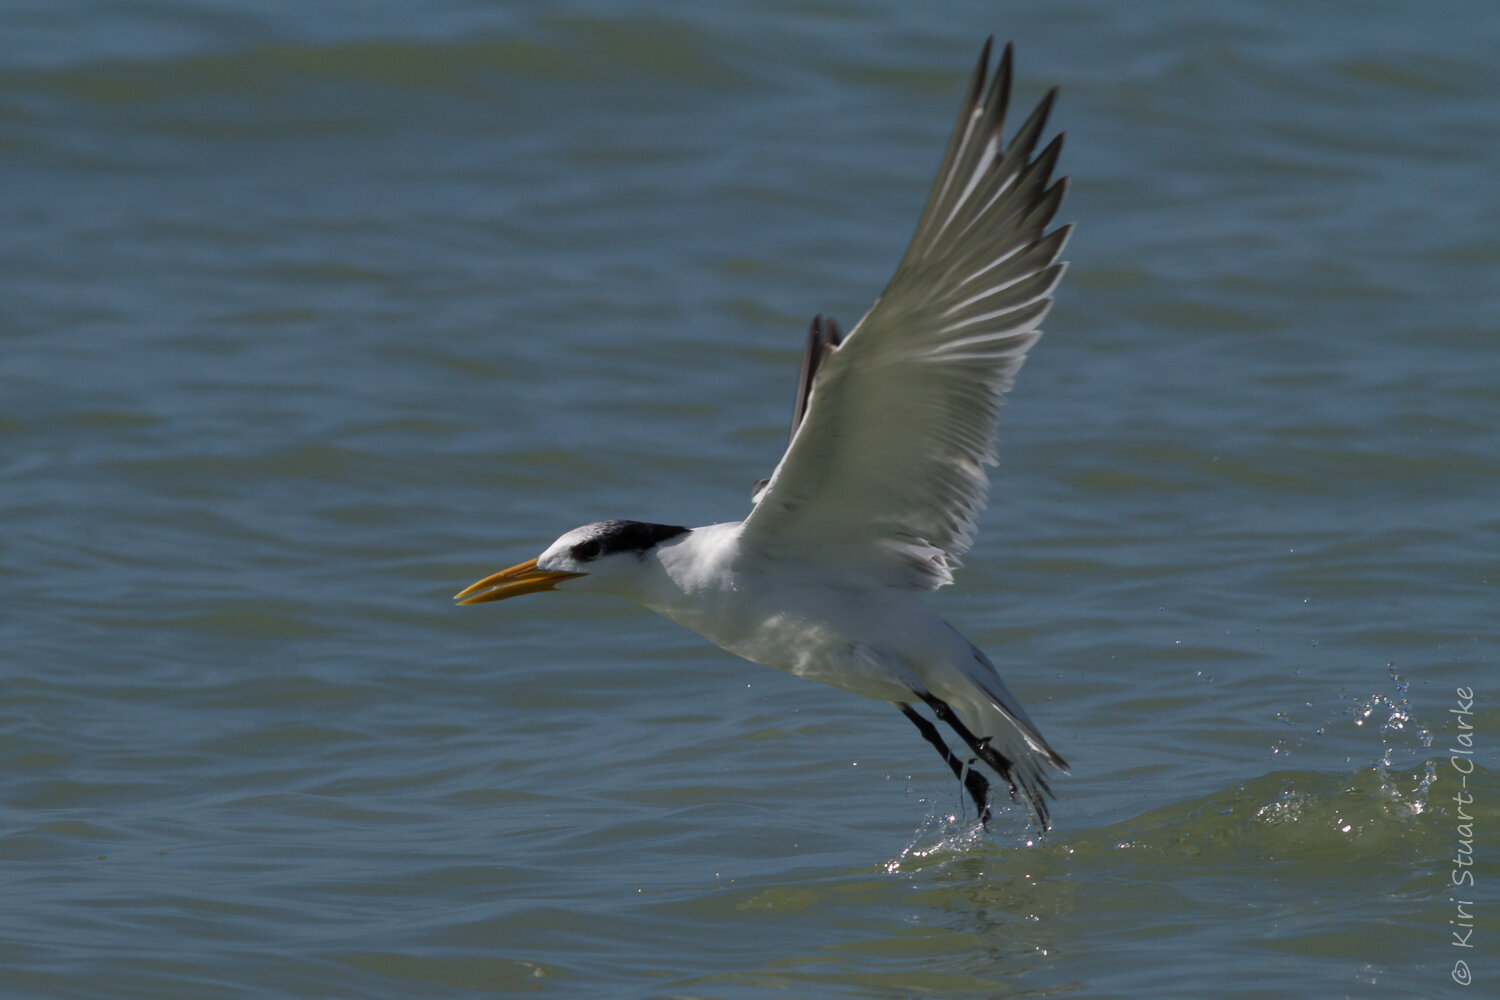  Royal tern skimming the water during take-off 